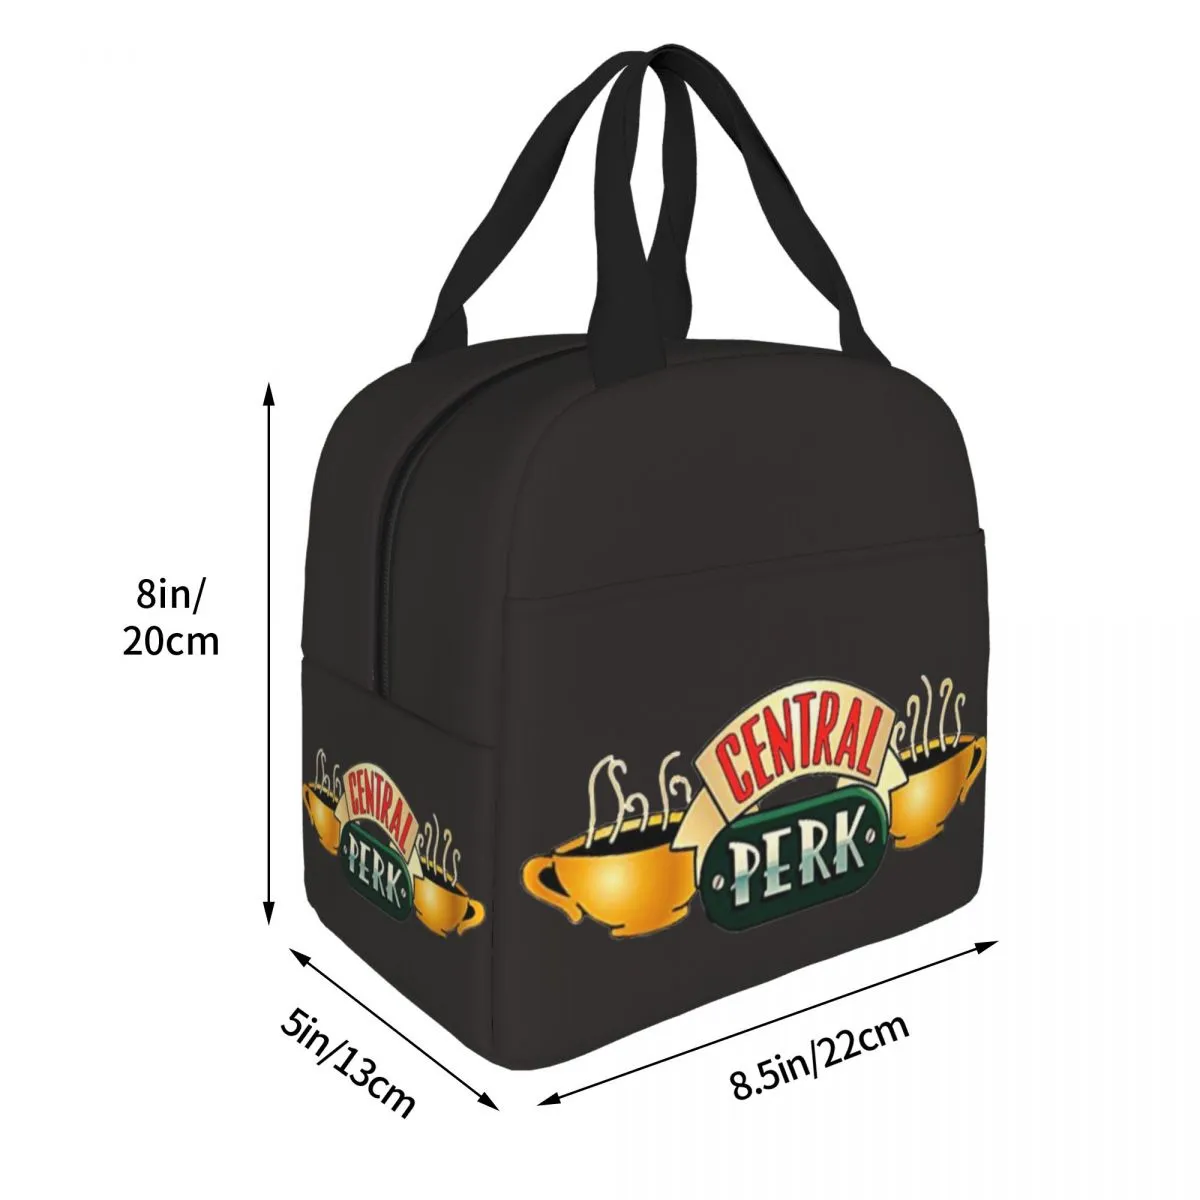 Пара лучших друзей Центральный парк изолированная сумка для обеда друзья телешоу обеденный залог контейнер кулир -пакет сумки для ланча для ланча